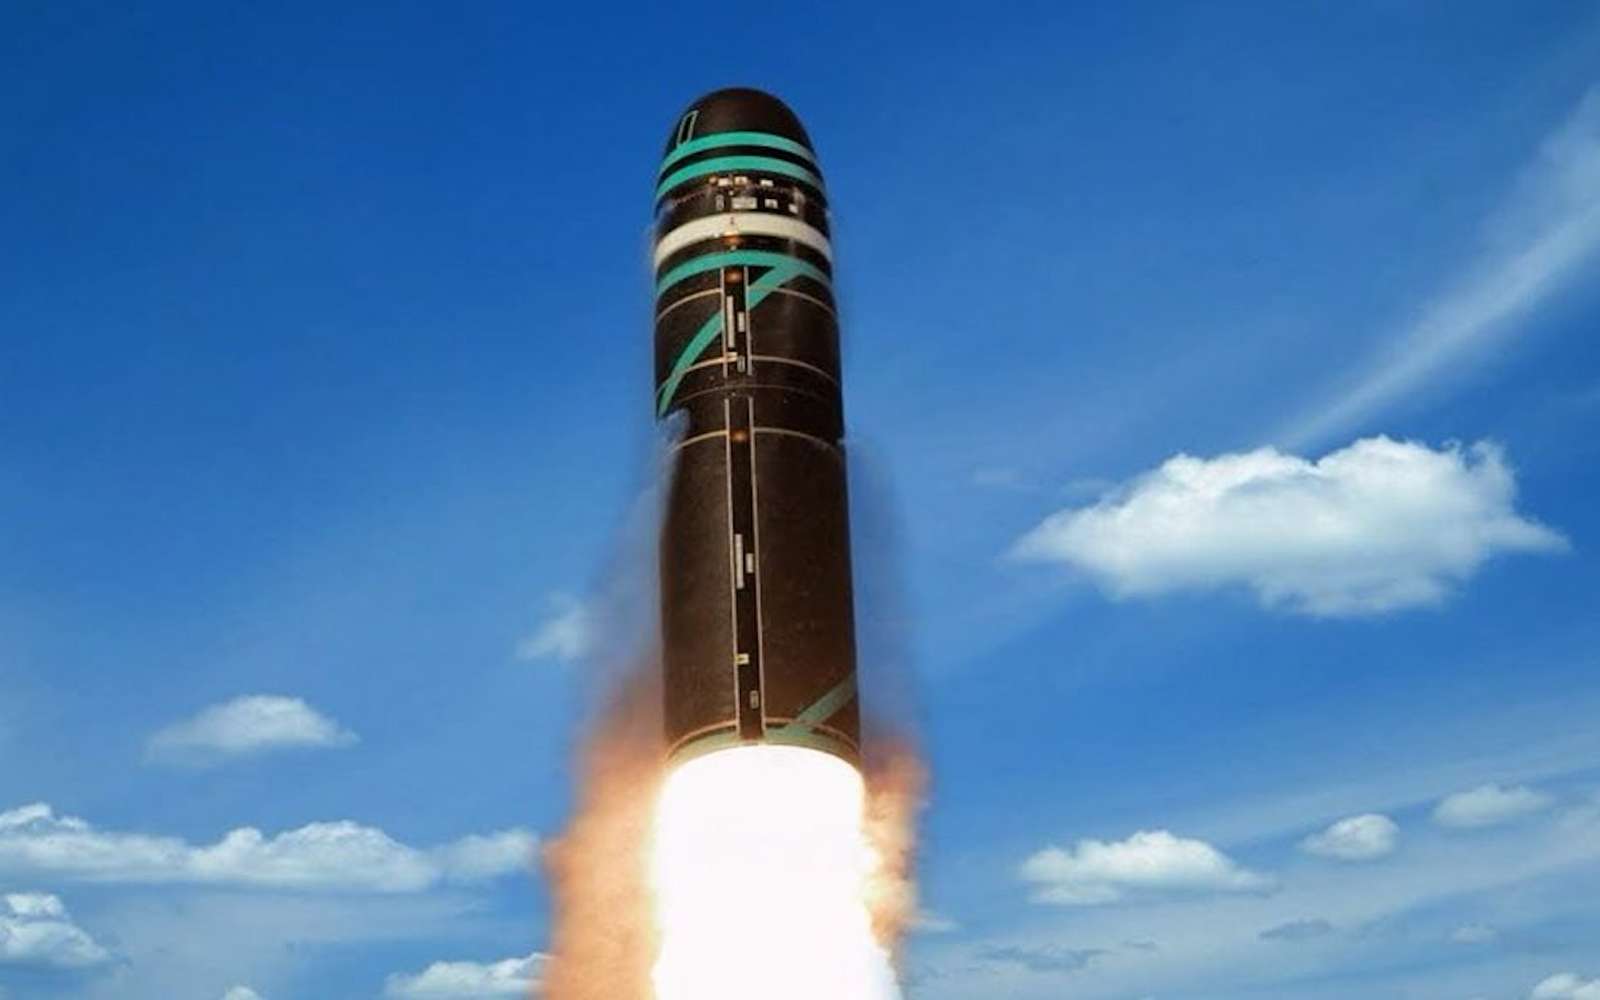 Tir de missile dans le sud-ouest : la France renforce sa dissuasion nucléaire